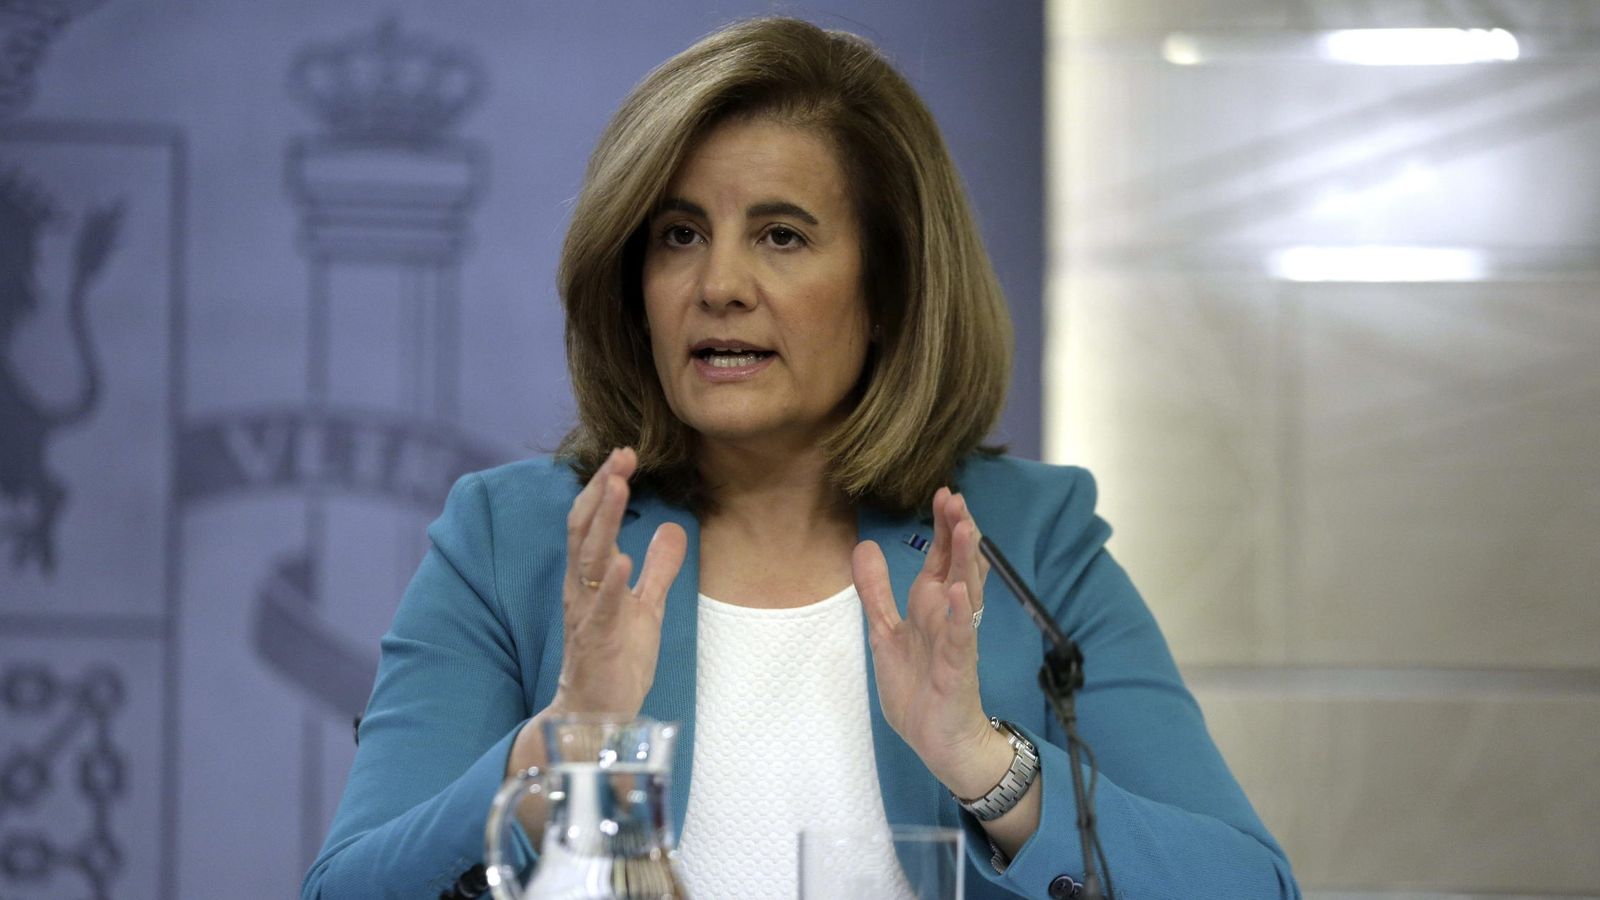 Foto: La ministra de Empleo y Seguridad Social, Fátima Báñez. (EFE)